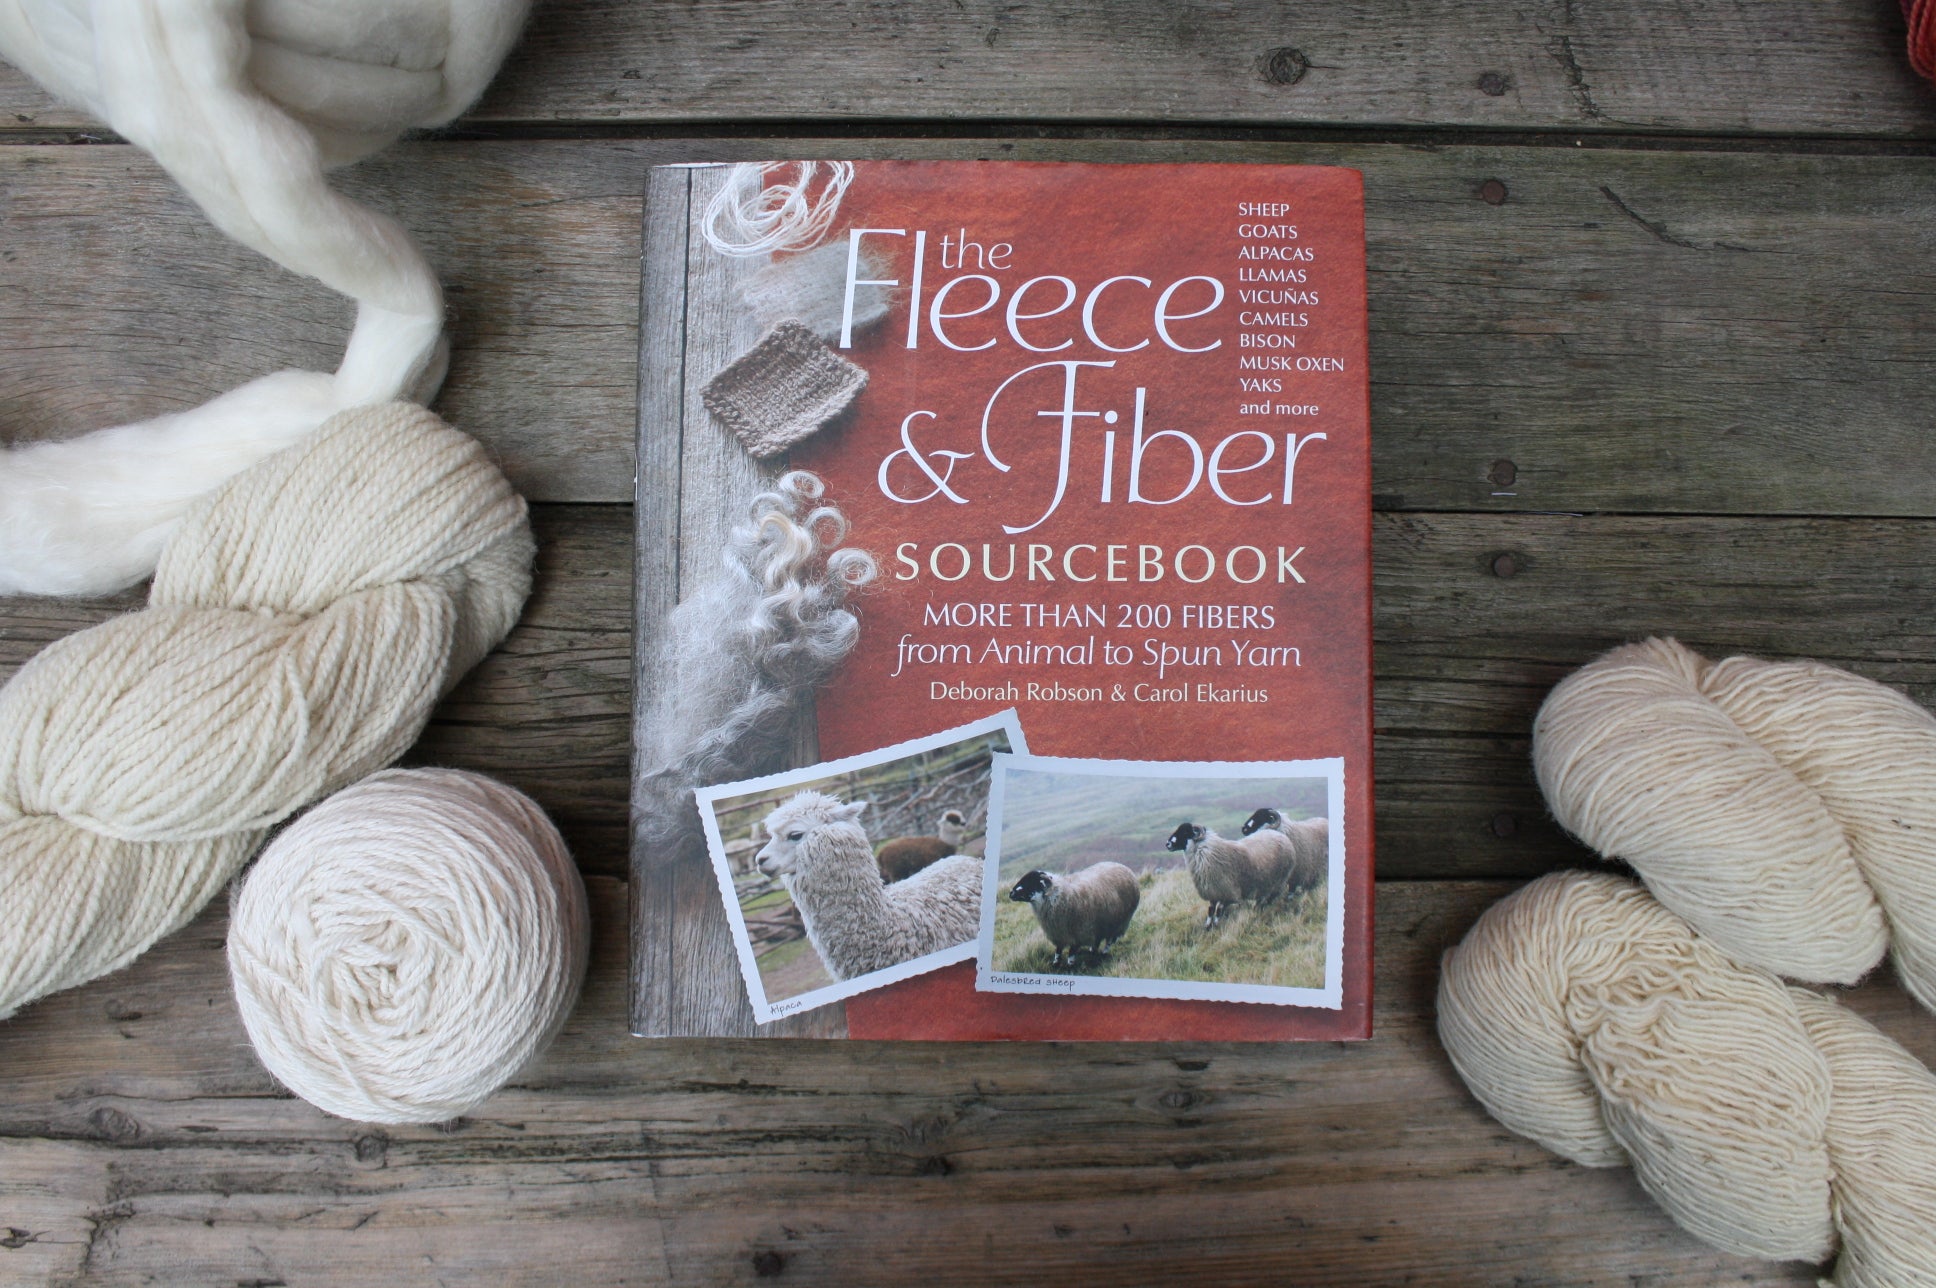 The Fleece & Fiber Sourcebook by Deborah Robson and Carol Ekarius